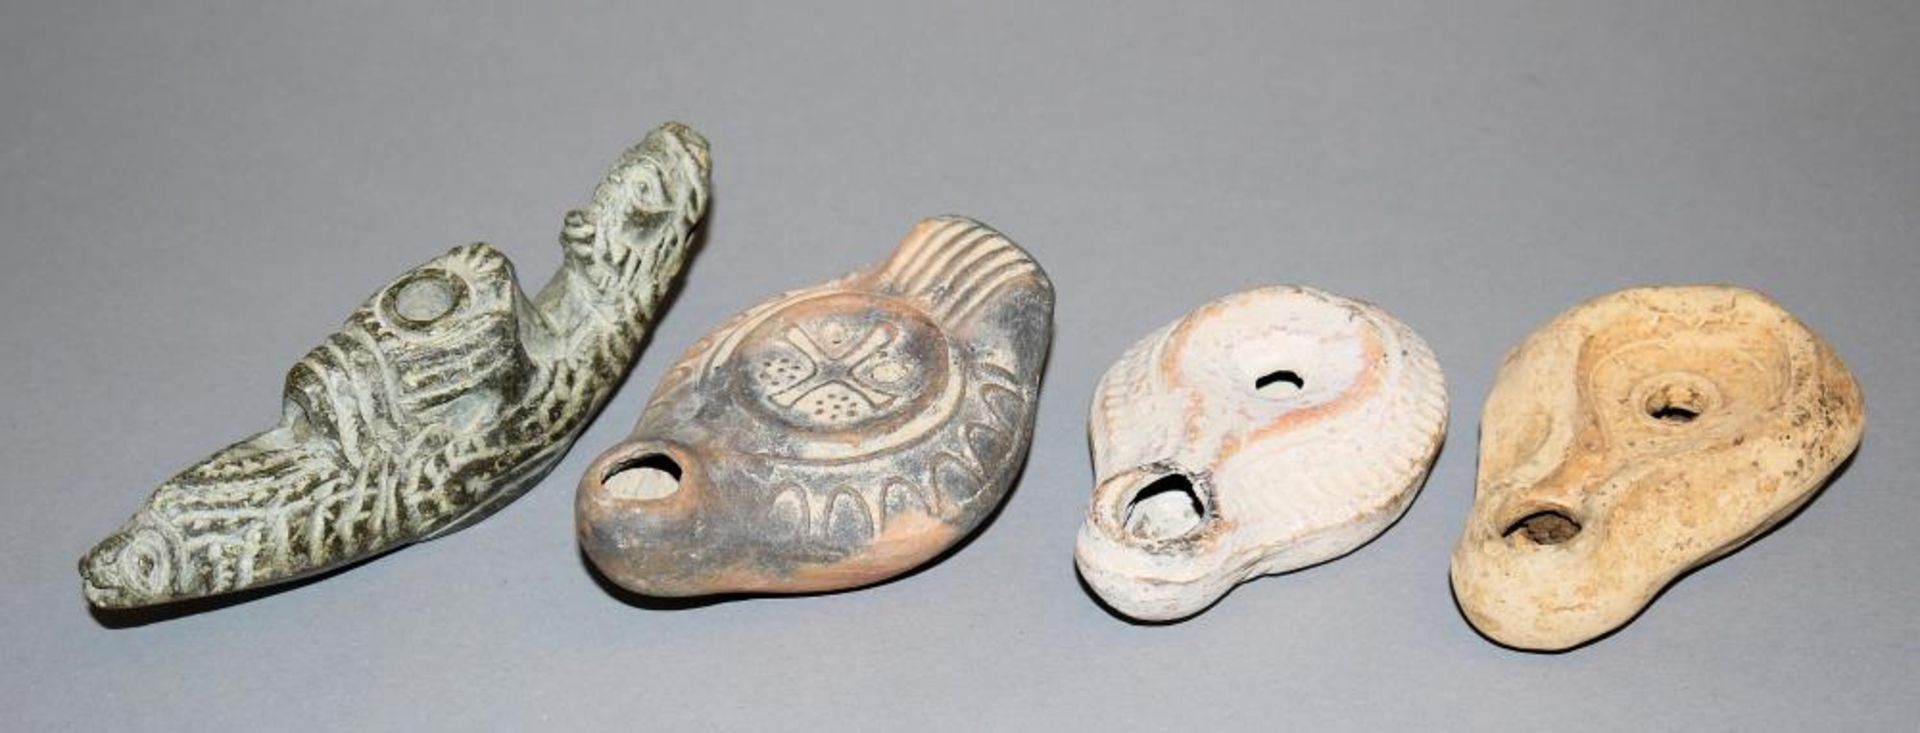 Drei Öllampen aus Ton, spätrömisch-byzantinisch, 3.-6.Jh., östlicher Mittelmeerraum/ Levante &